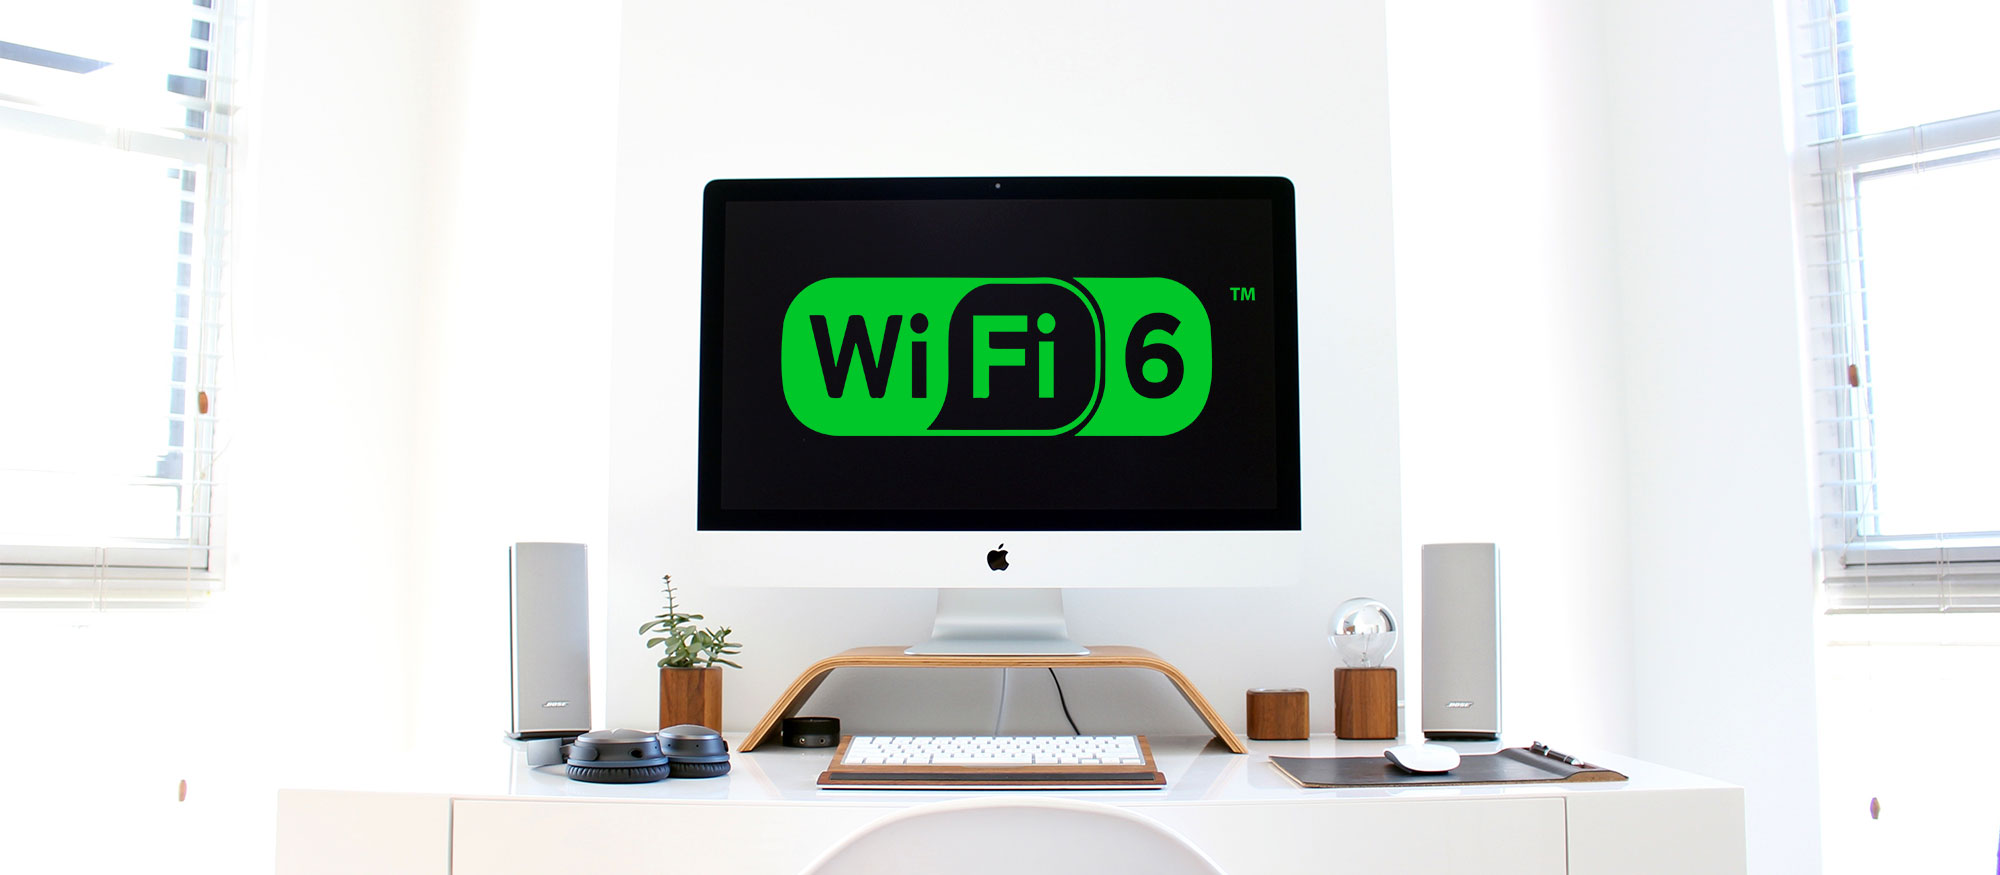 Wi-Fi 6, la revolución de la conexión inalámbrica.